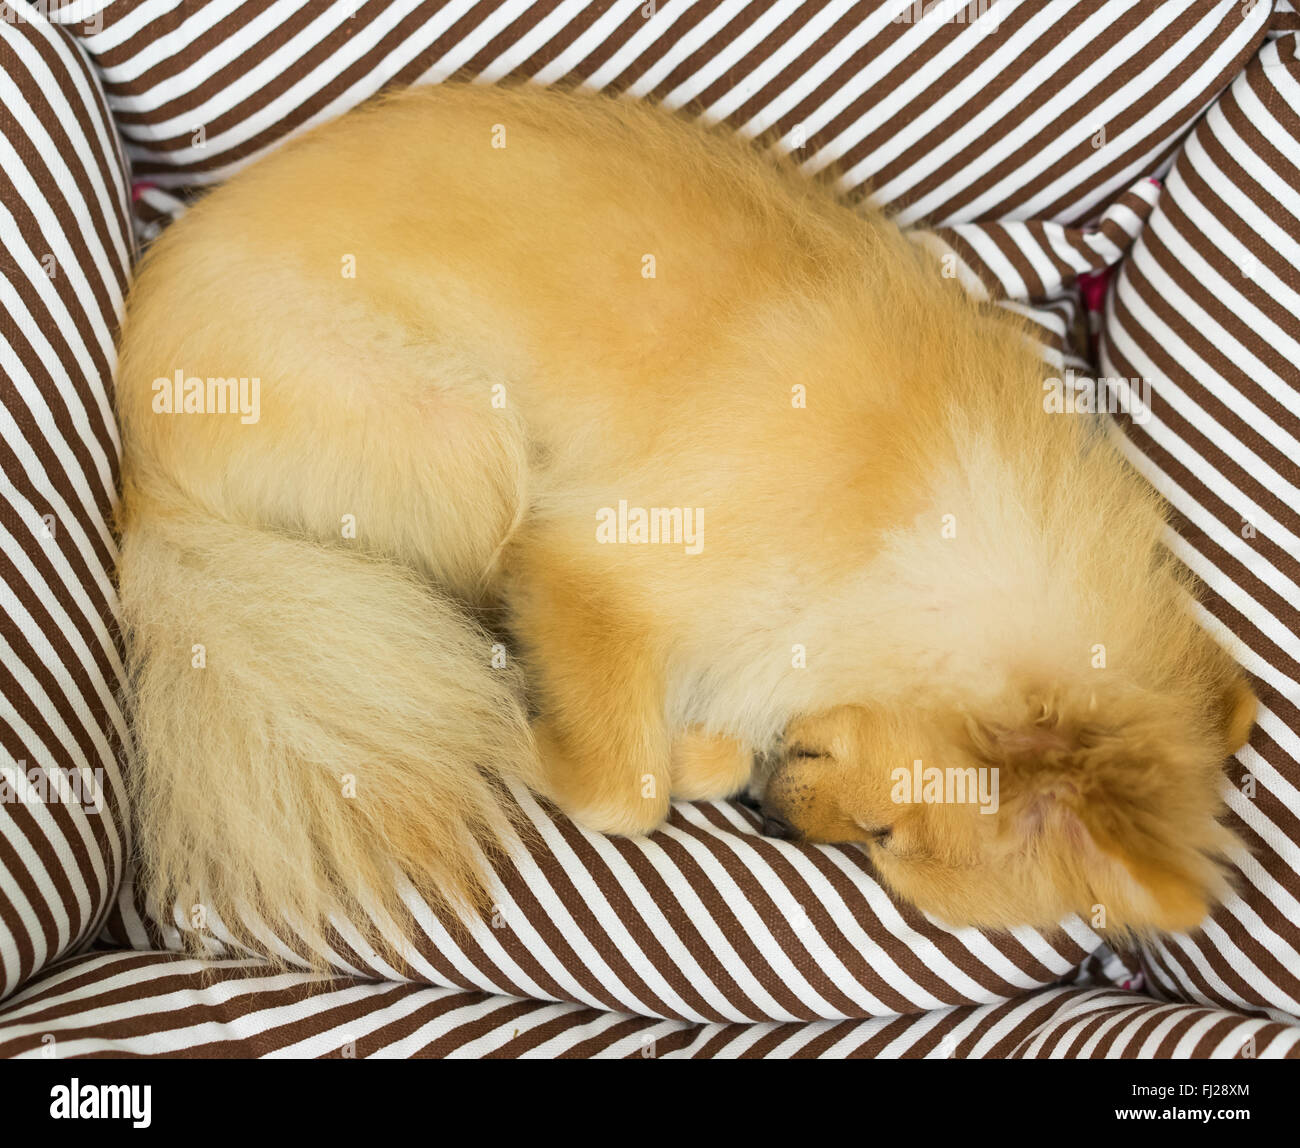 Pomeranian dog sleeping on dog's bed Stock Photo